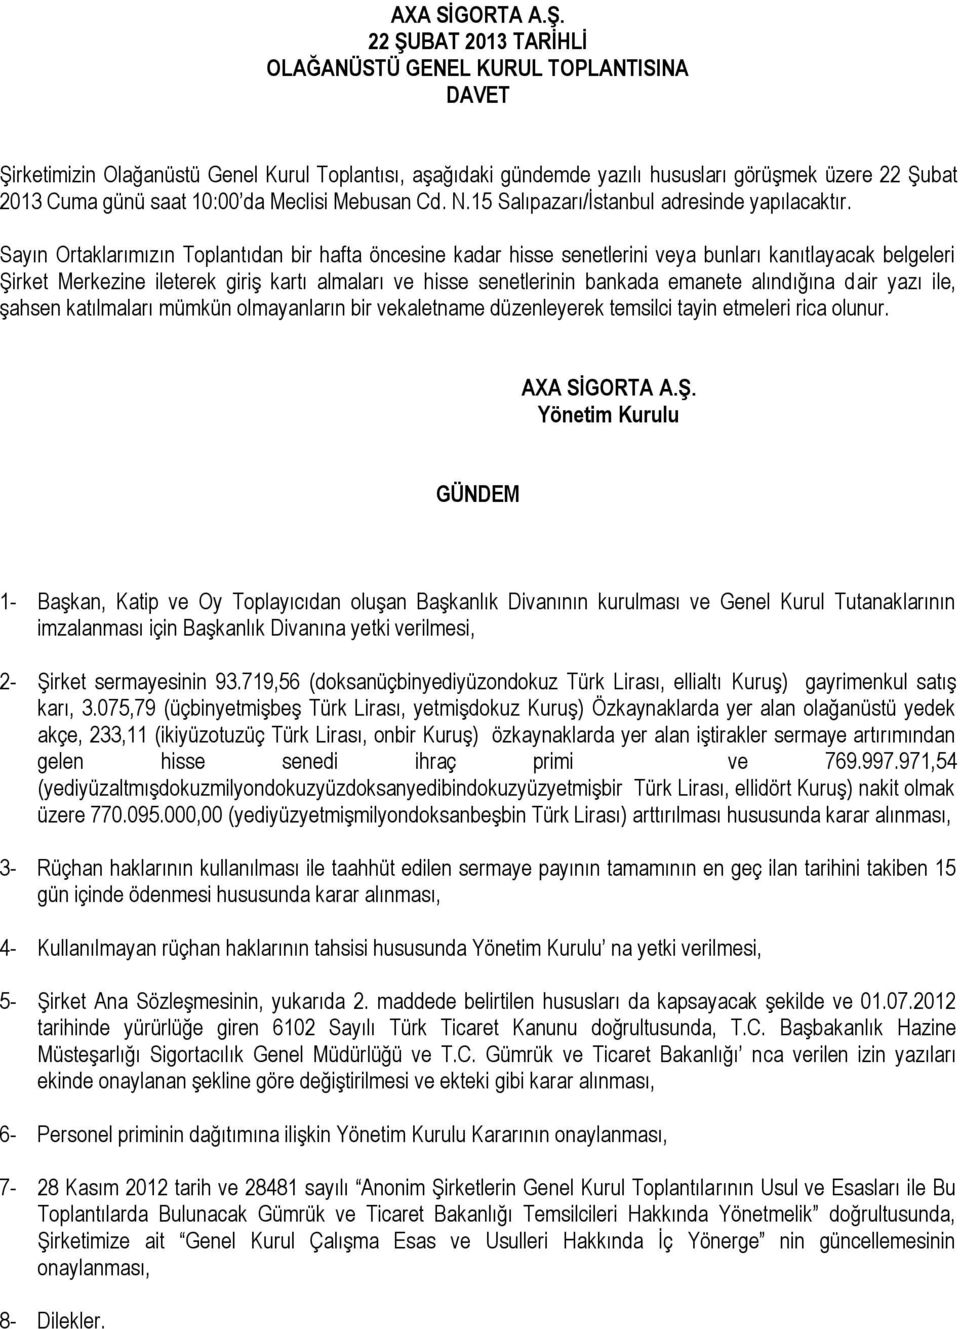 da Meclisi Mebusan Cd. N.15 Salıpazarı/İstanbul adresinde yapılacaktır.